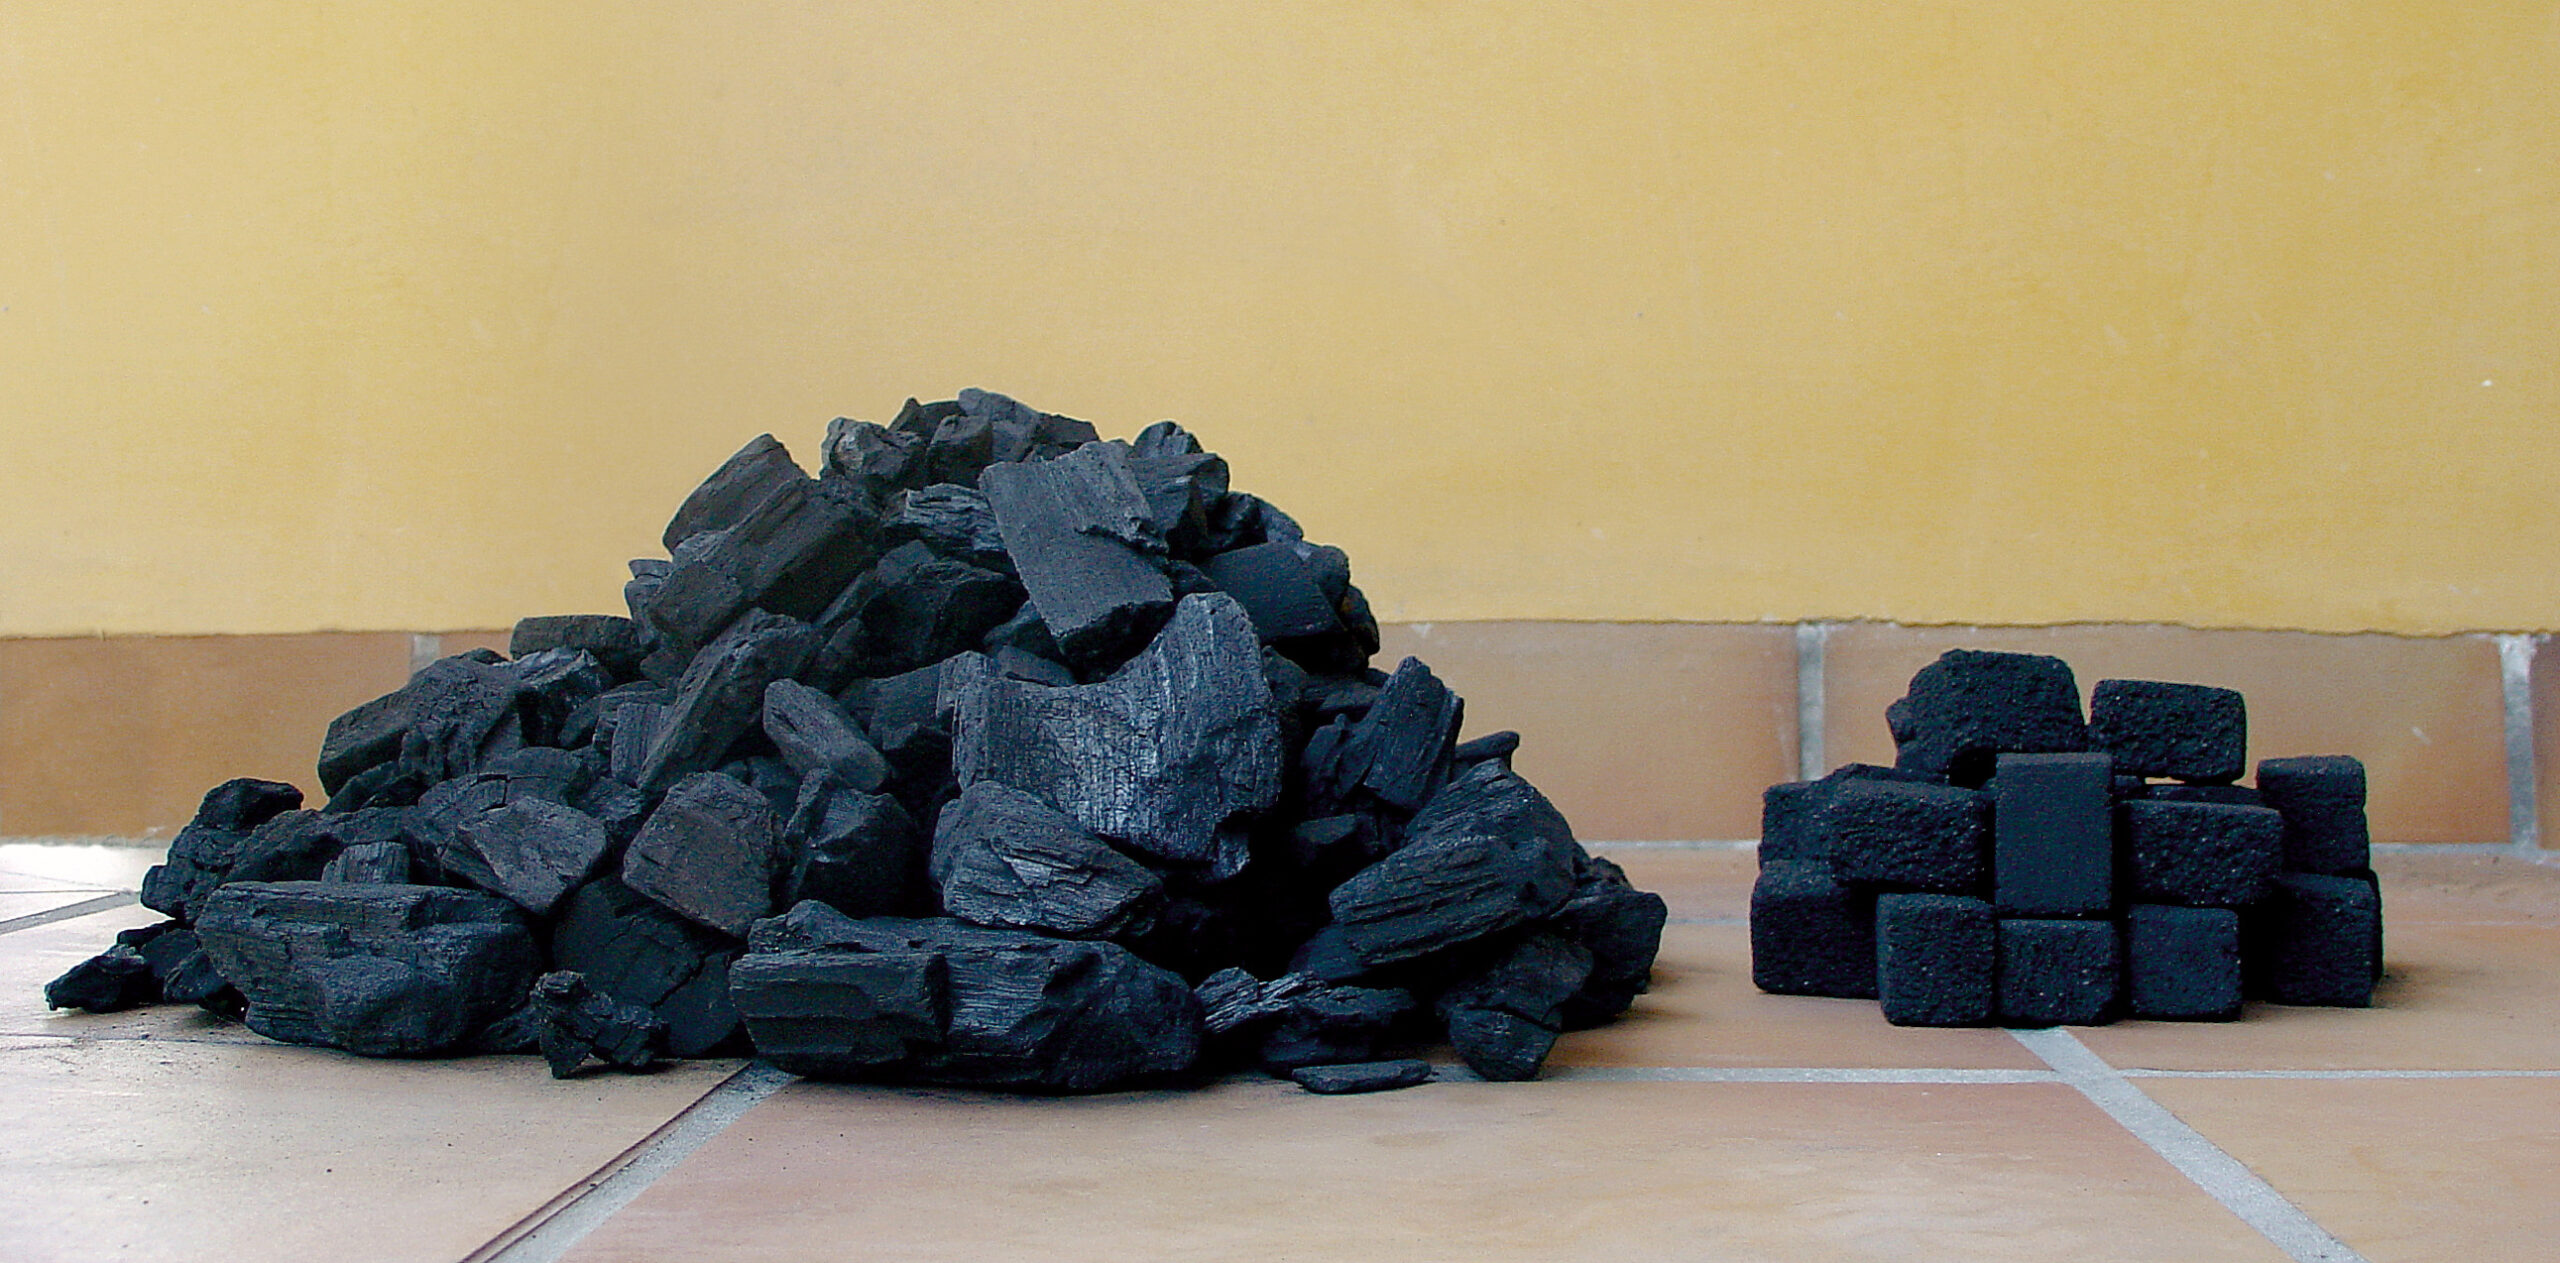 Pellets de sarmiento – Ecobrasa-Carbón de coco para barbacoas